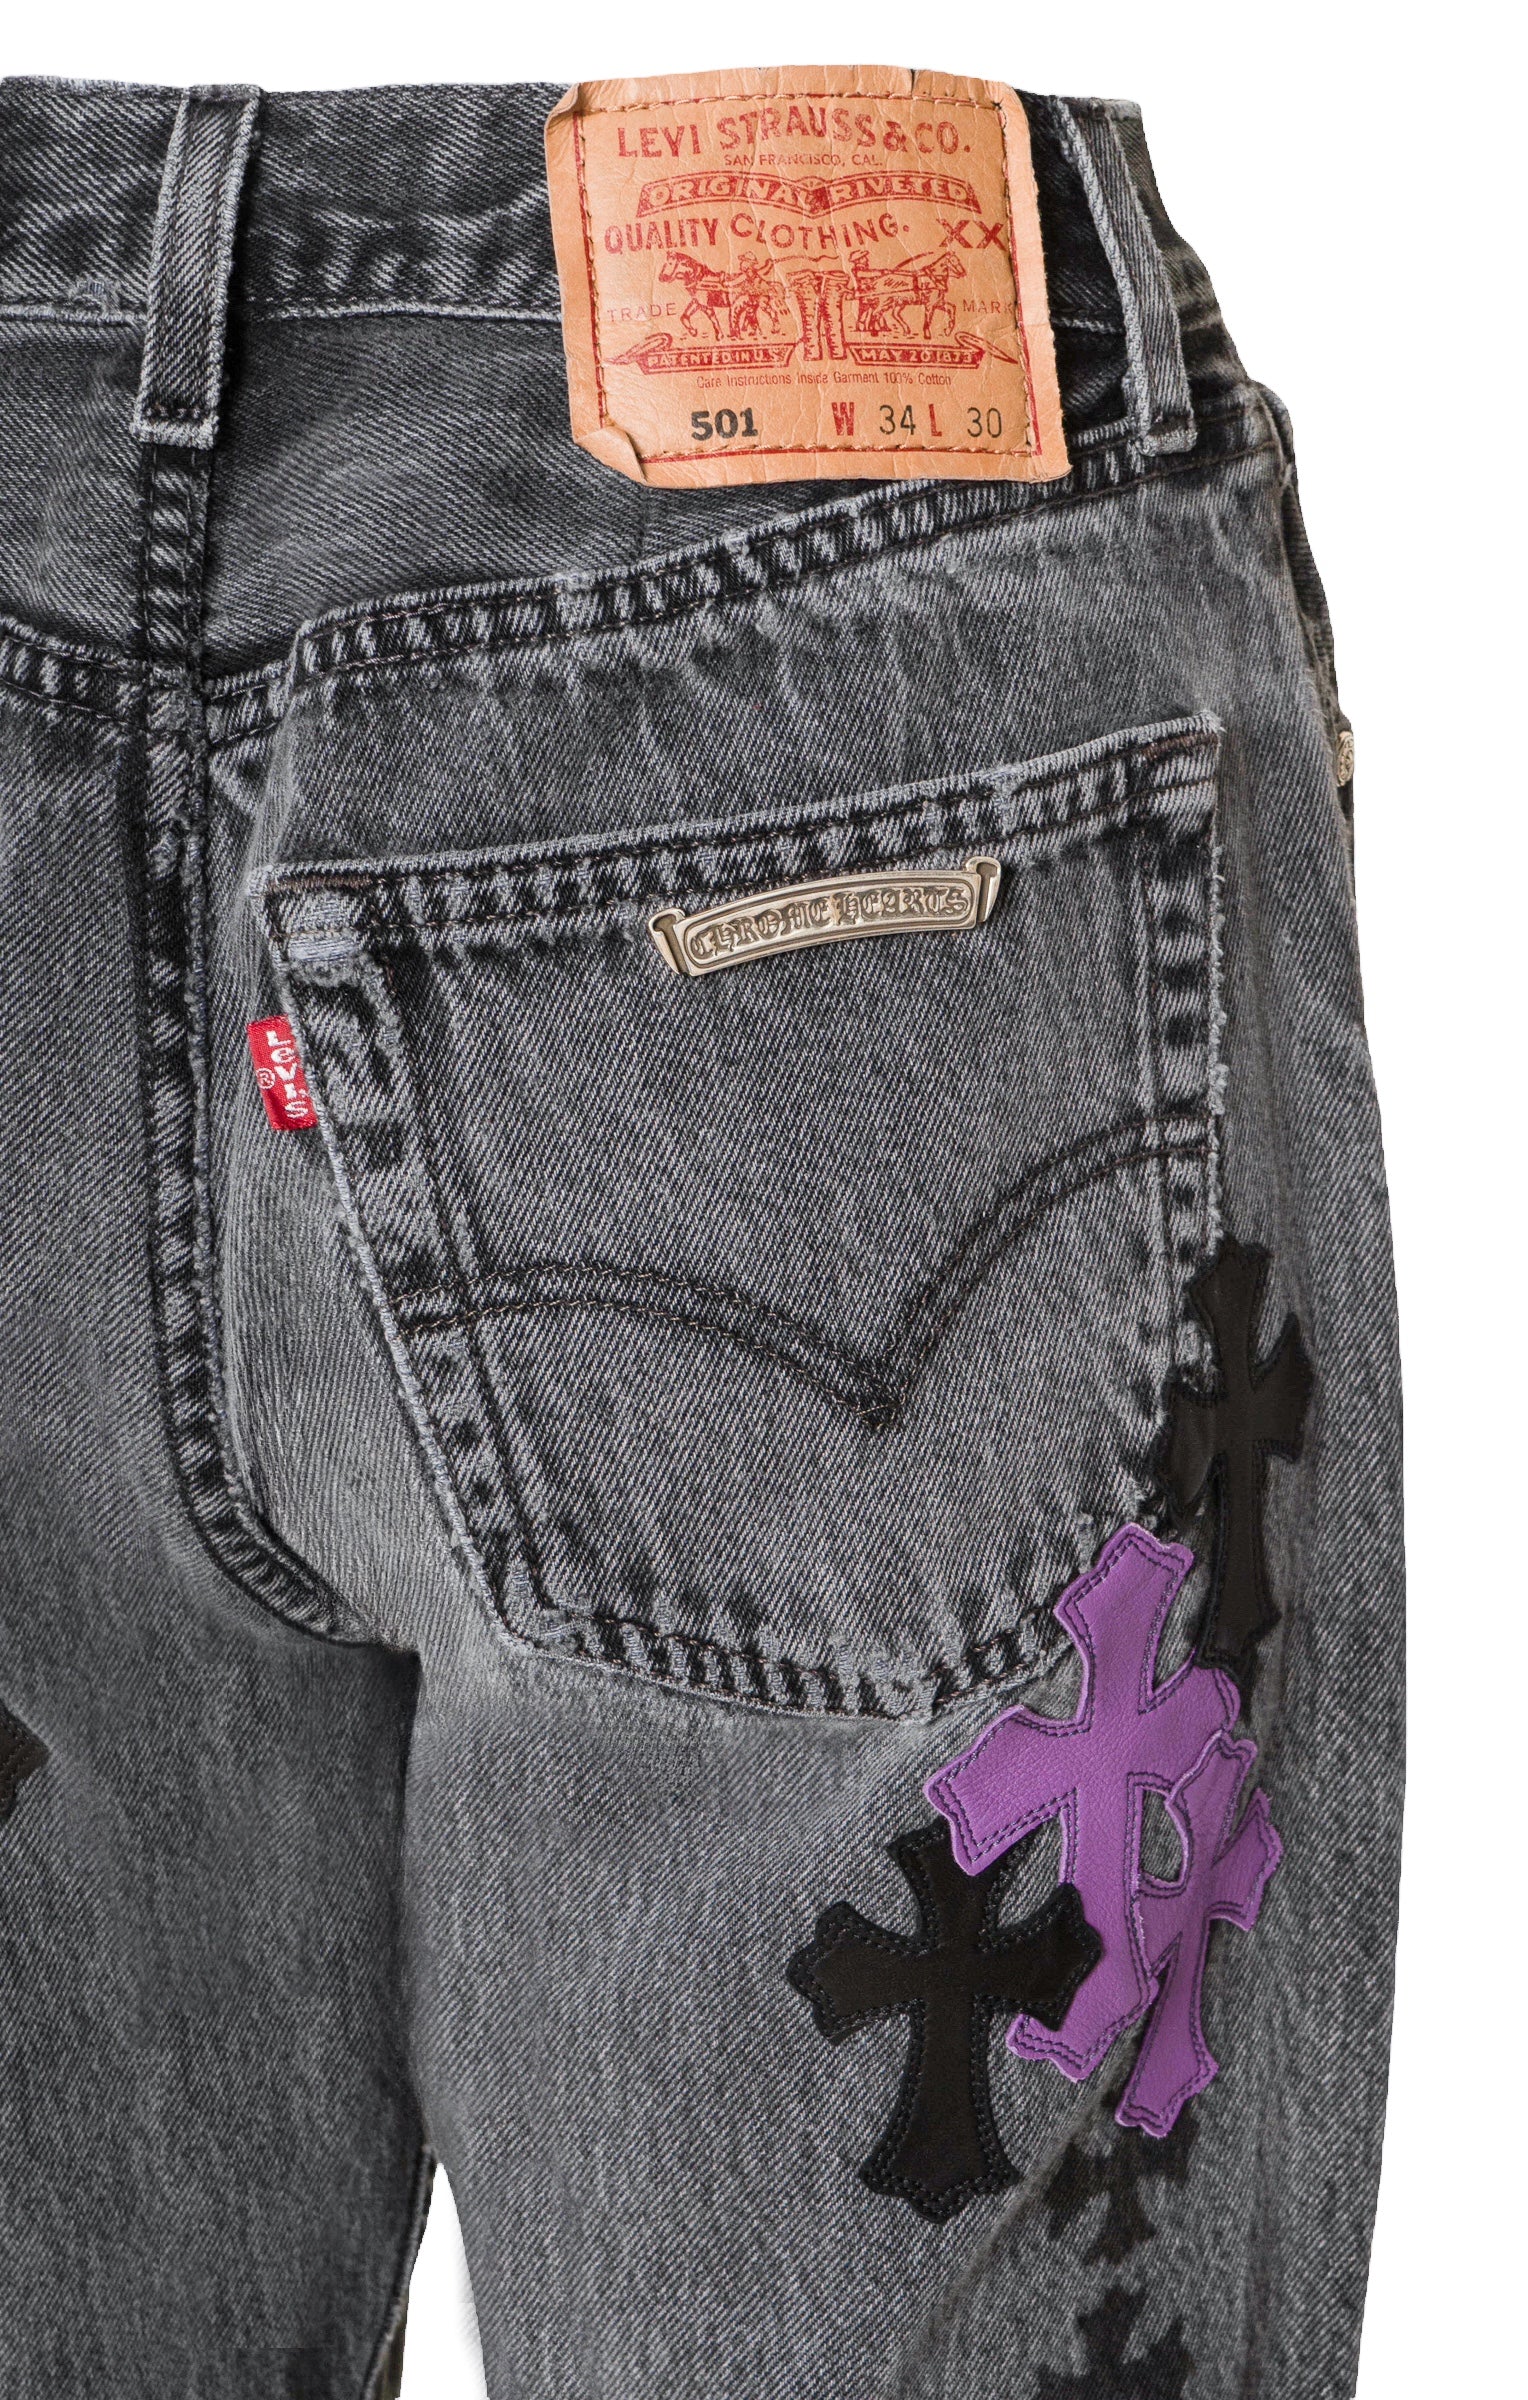 CHROME HEARTS x VINTAGE LEVI'S (RARE) Jeans Size: See Description